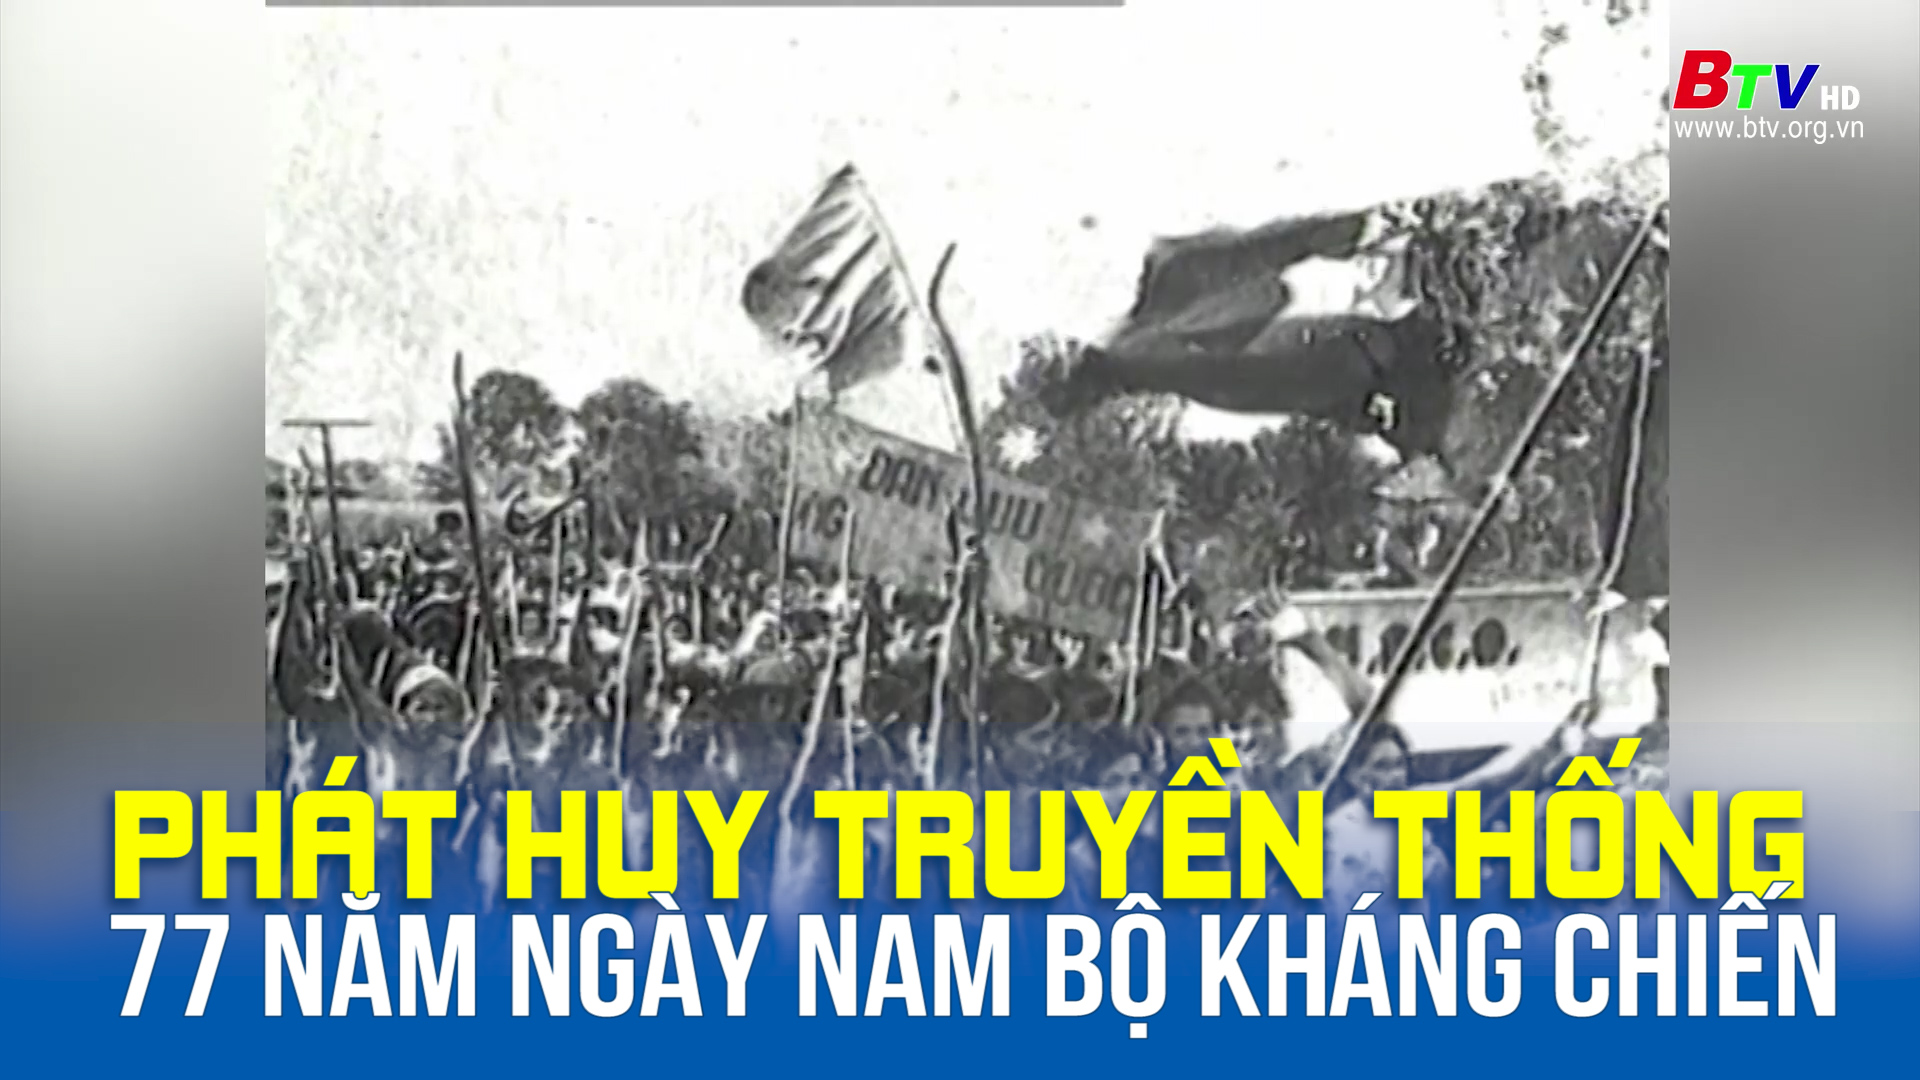 Phát huy truyền thống 77 năm ngày Nam bộ kháng chiến